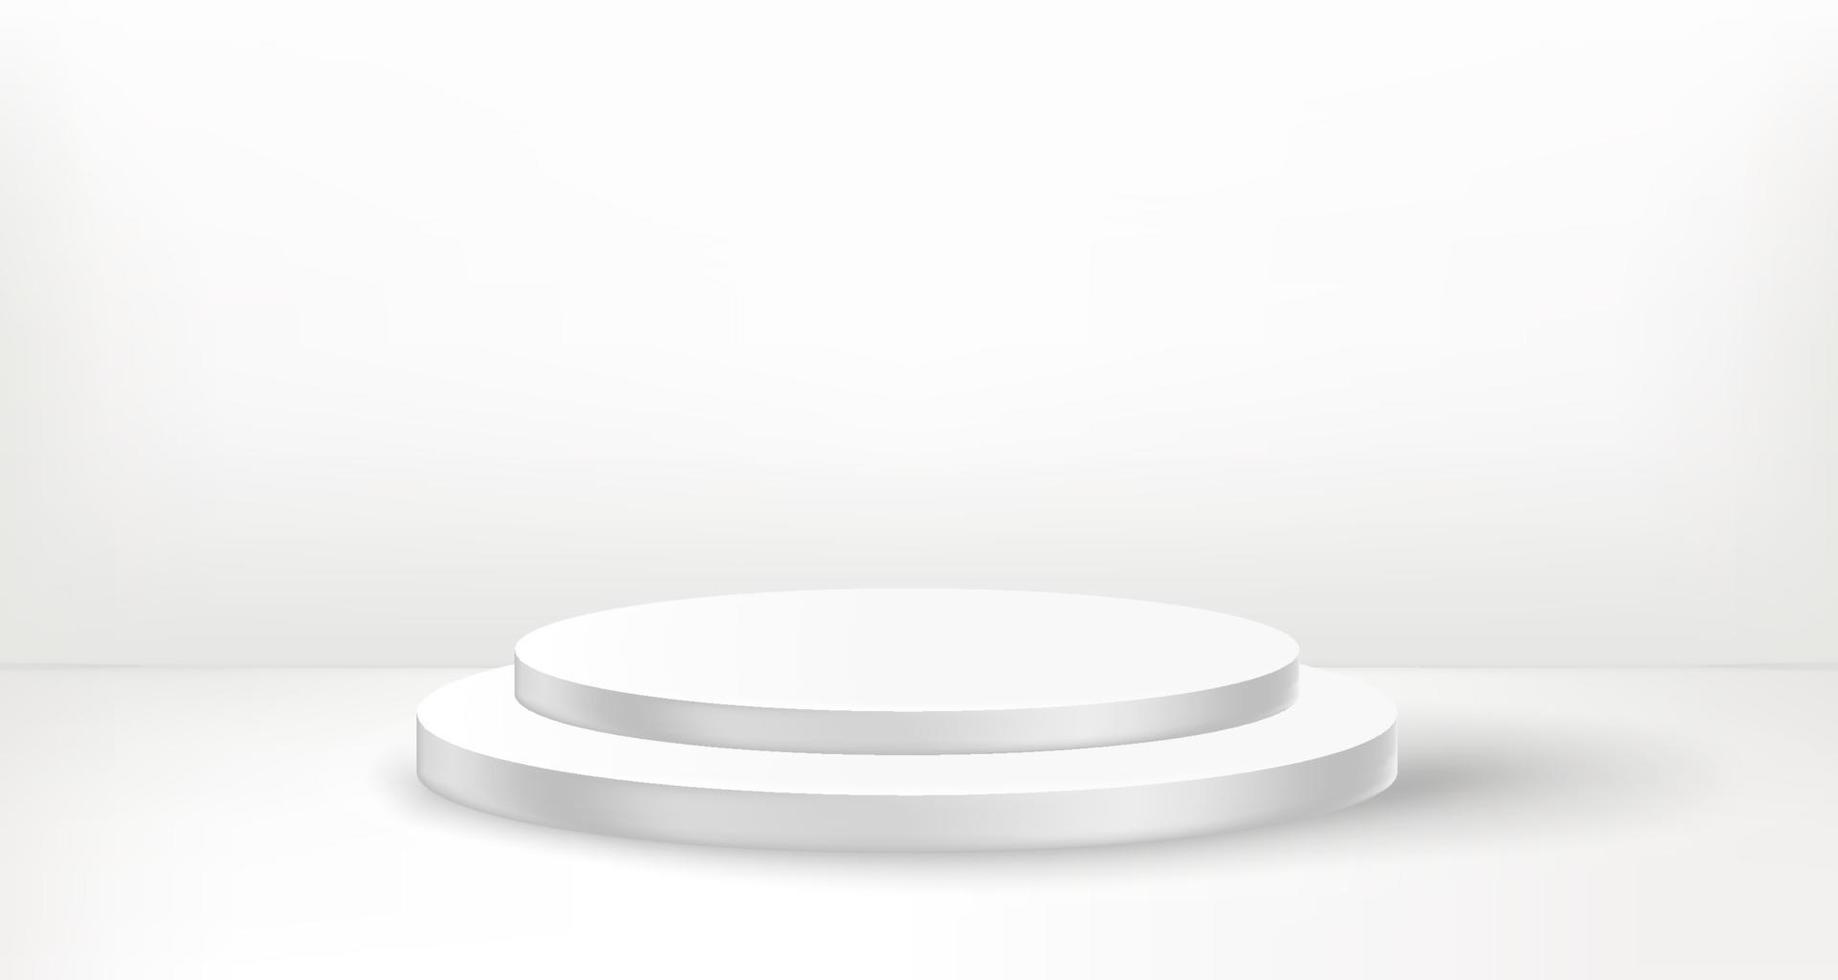 escenario vacío blanco con vitrina redonda. ilustración vectorial 3d vector